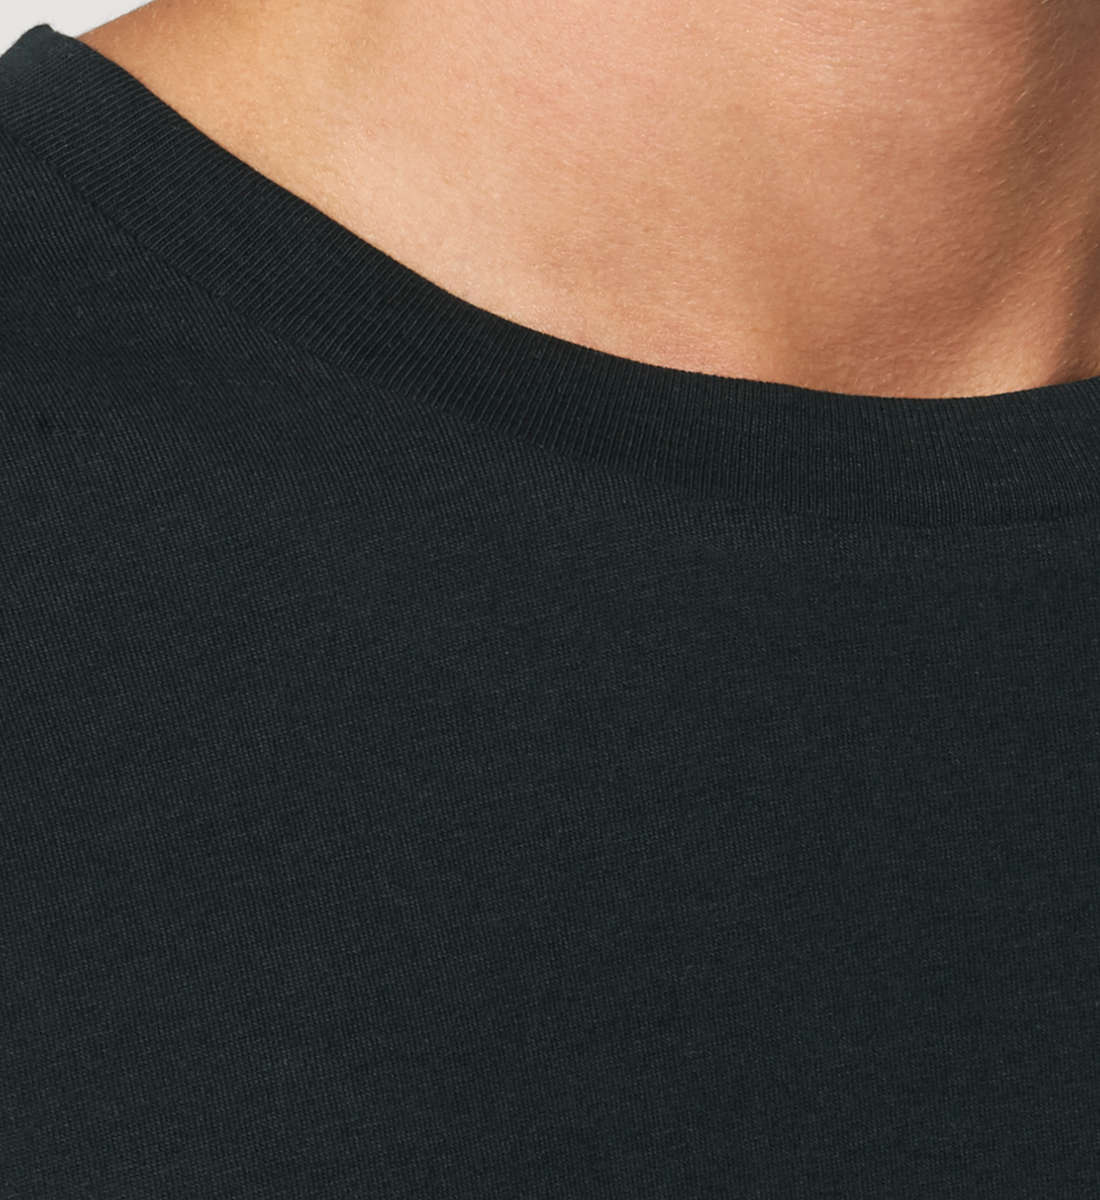 Schwarzes T-Shirt Unisex Relaxed Fit für Damen und Herren bedruckt mit dem Design der Roger Rockawoo Kollektion Musiker LoFi Junky